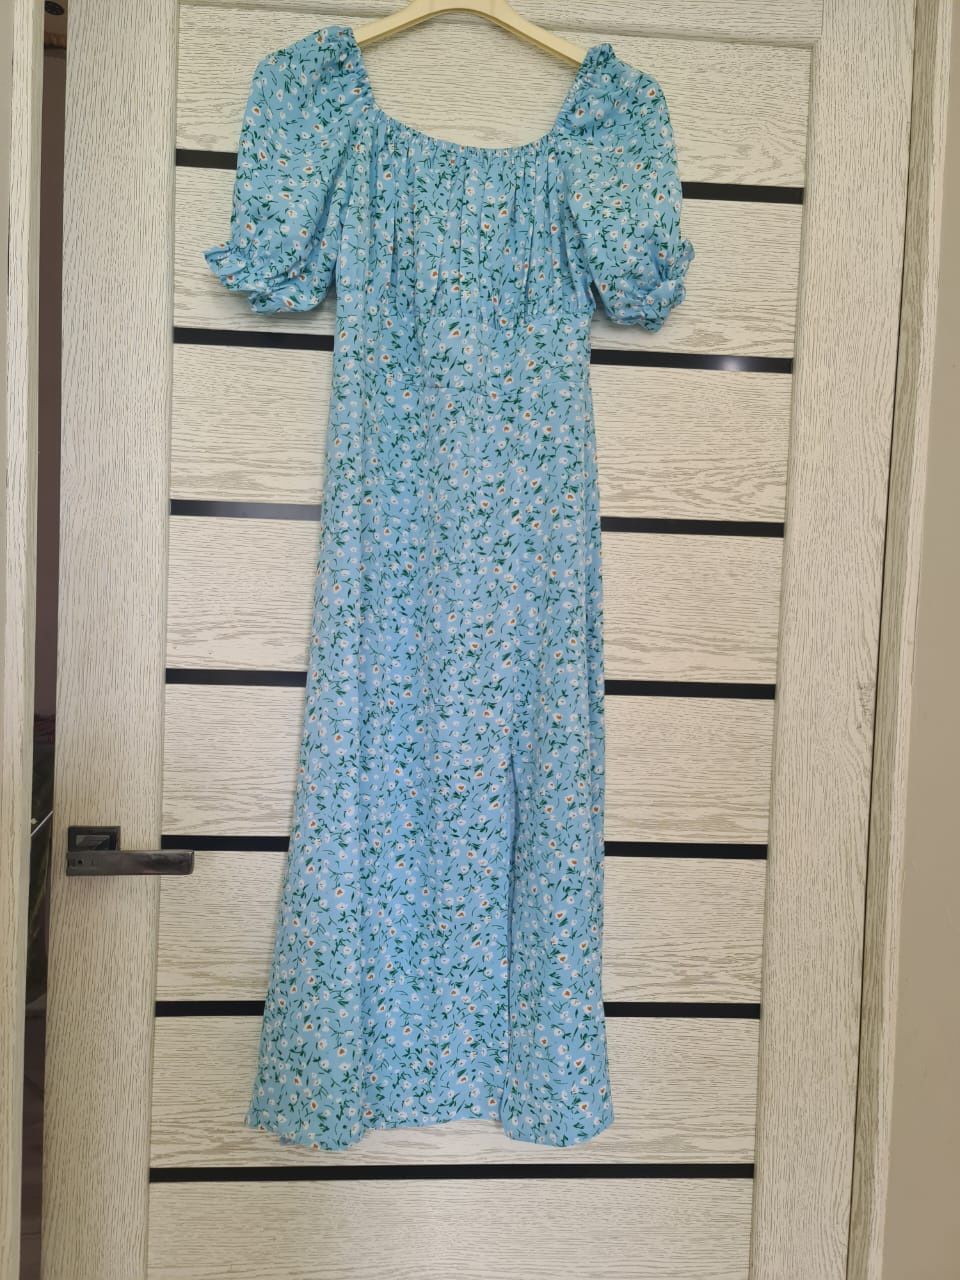 Продам красивое платье женское в состоянии НОВОГО! 46 размер